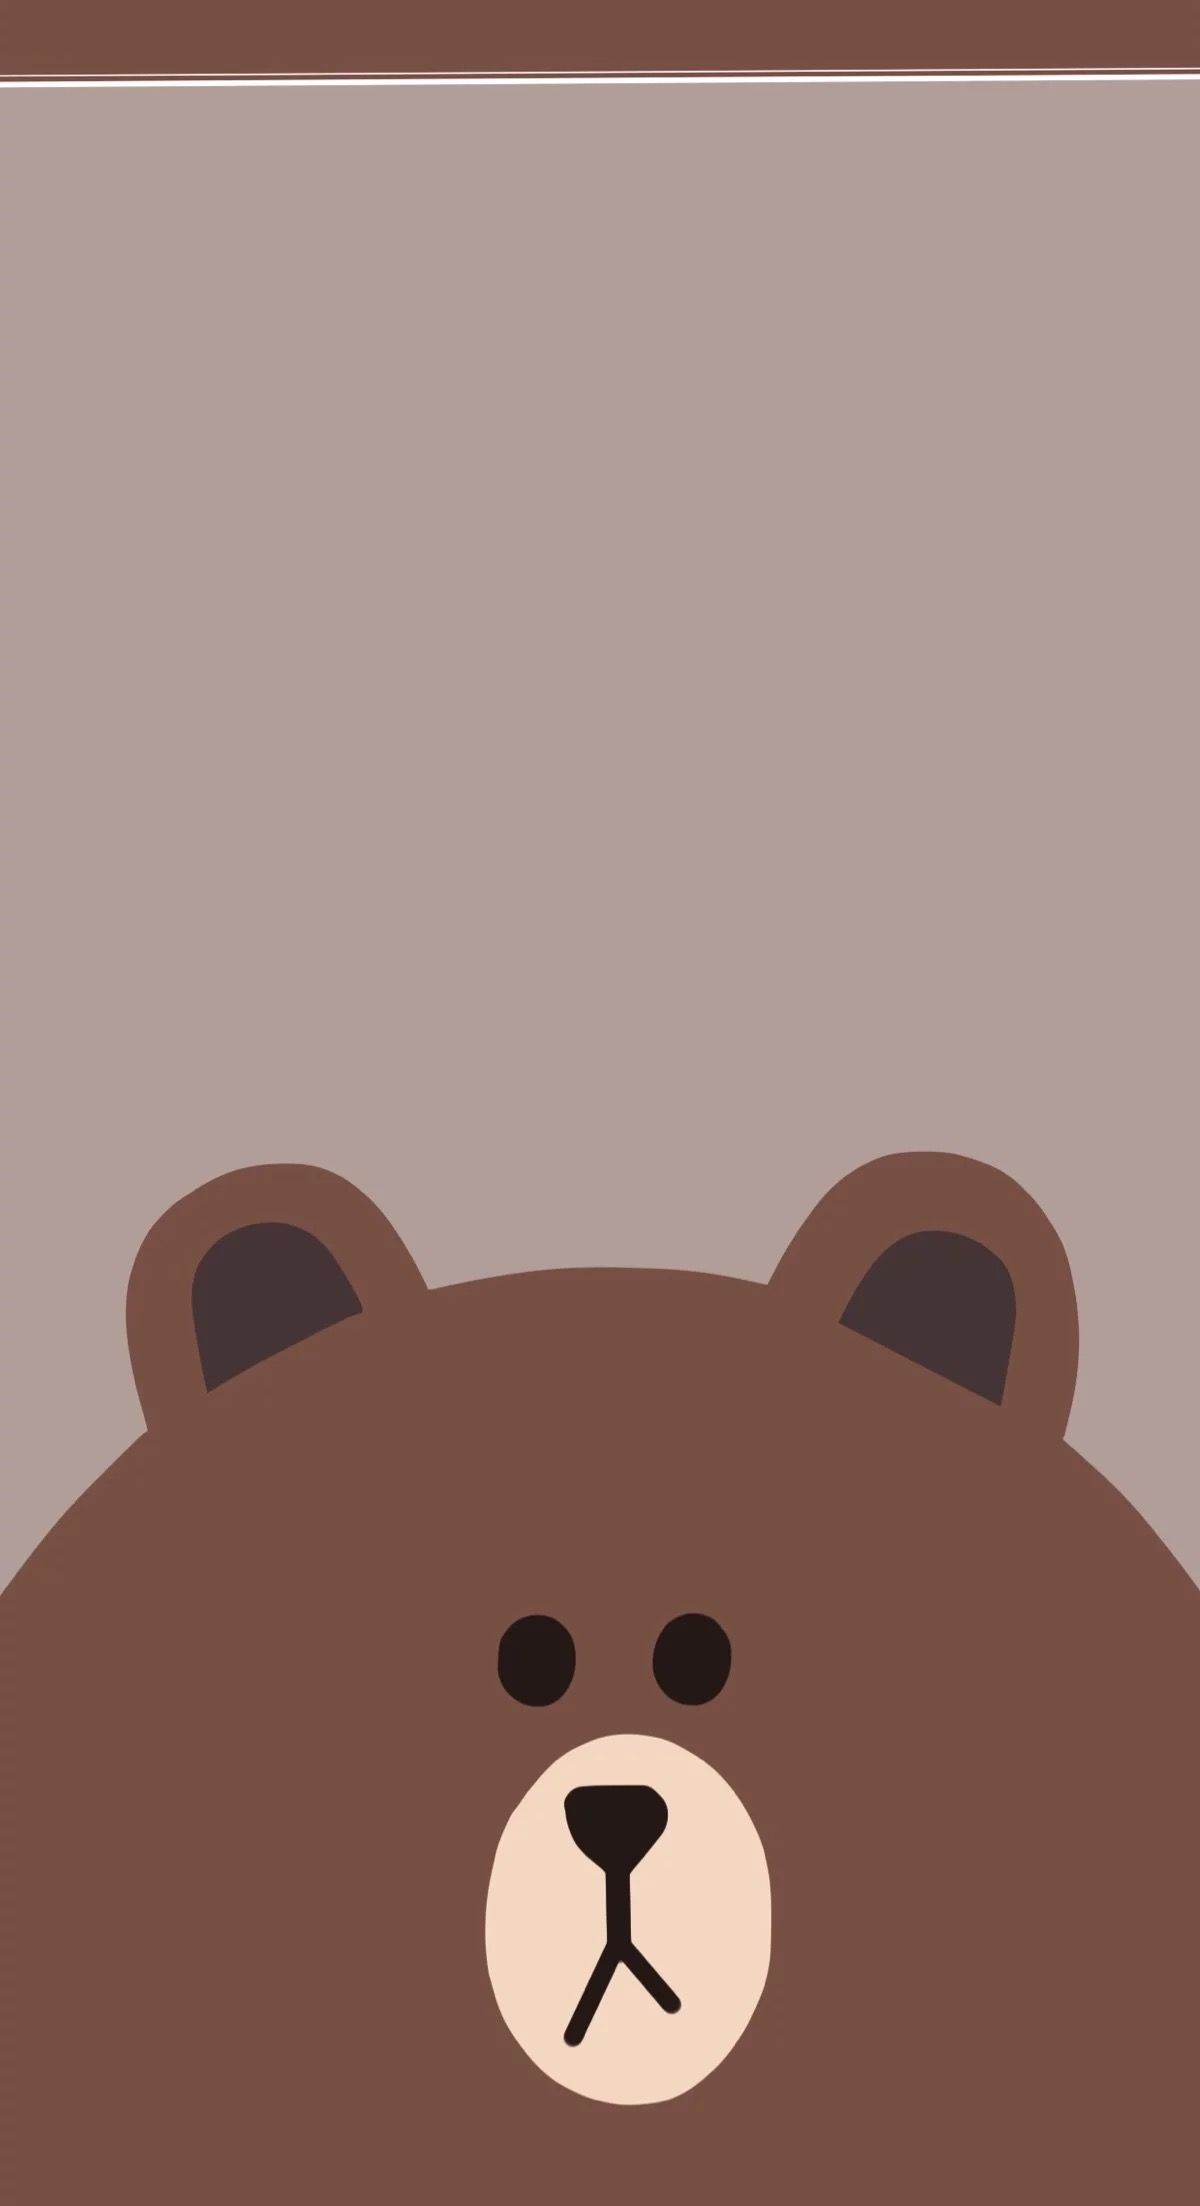 Hình Nền Gấu Siêu Cute Dễ Thương Hết Mức Tặng Bạn